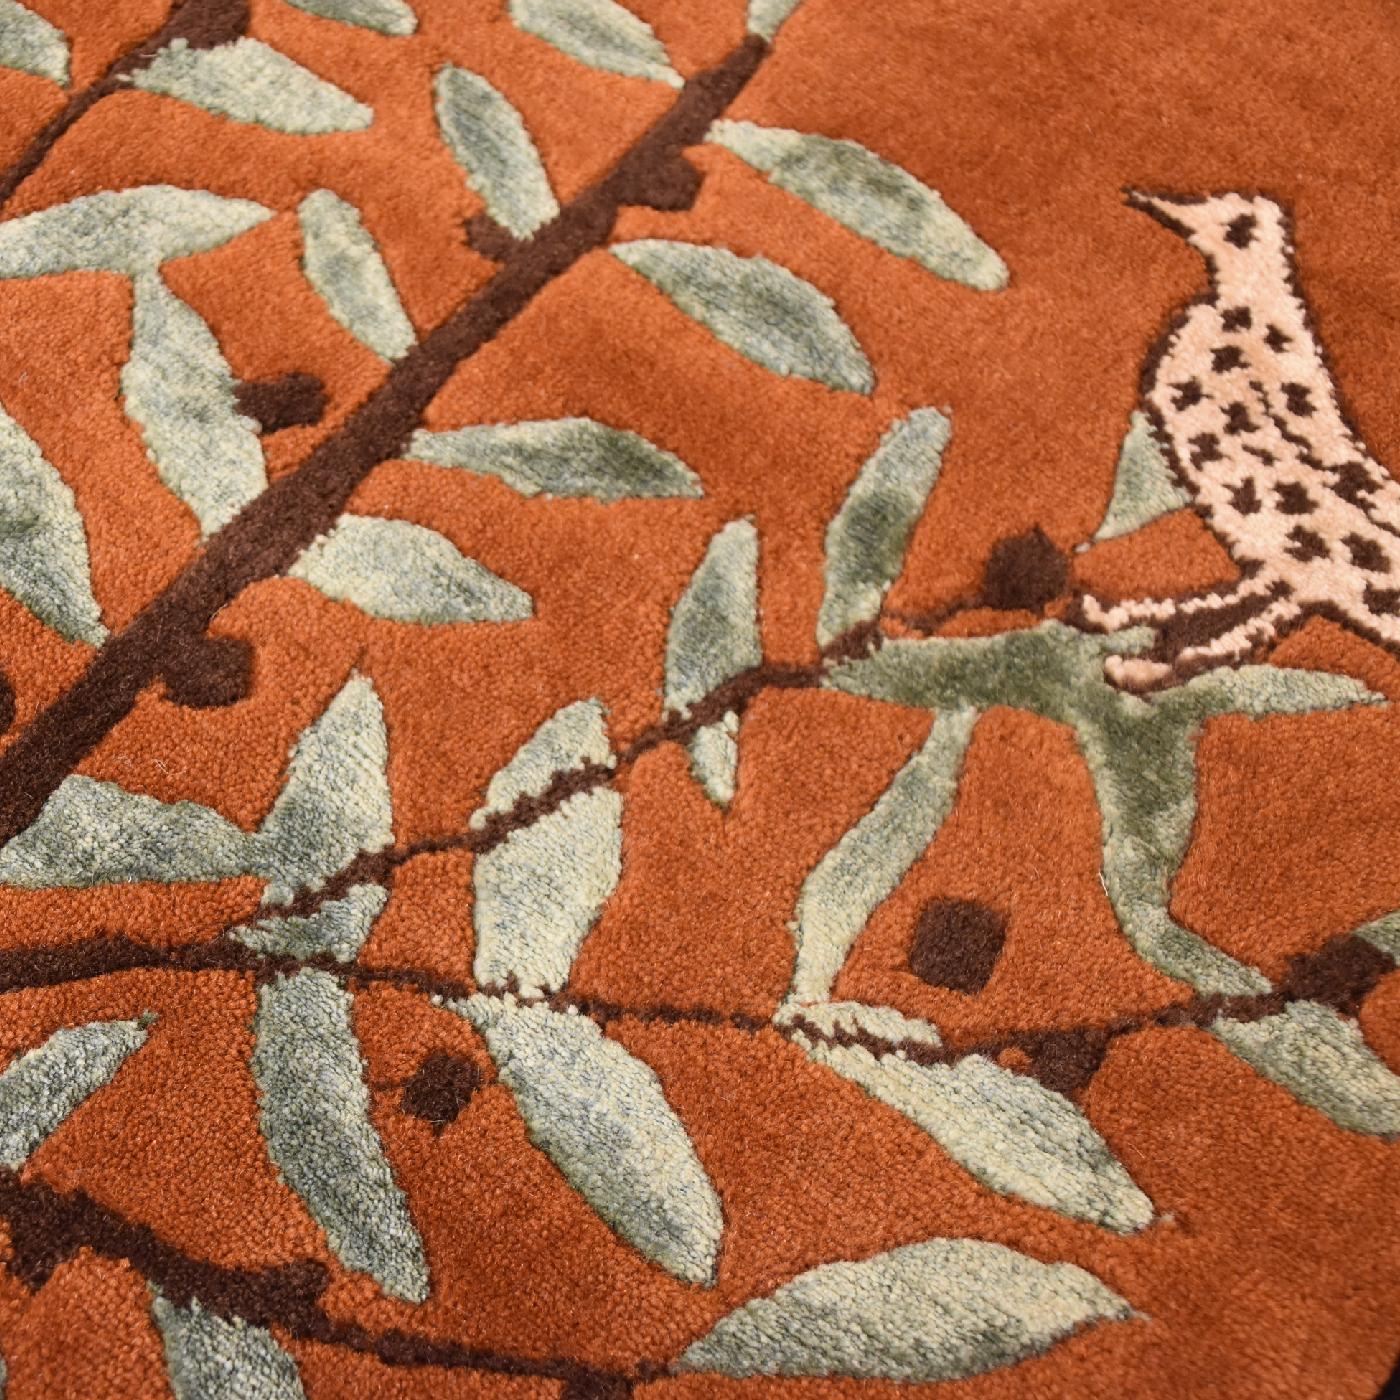 Als Teil einer Serie von Teppichen, die von Linde Burkhardt entworfen wurden, erinnert dieser prächtige Teppich auf poetische Weise an das tägliche Leben und die Kultur des antiken etruskischen Volkes. Das Thema des Lebens in Freude wird durch eine